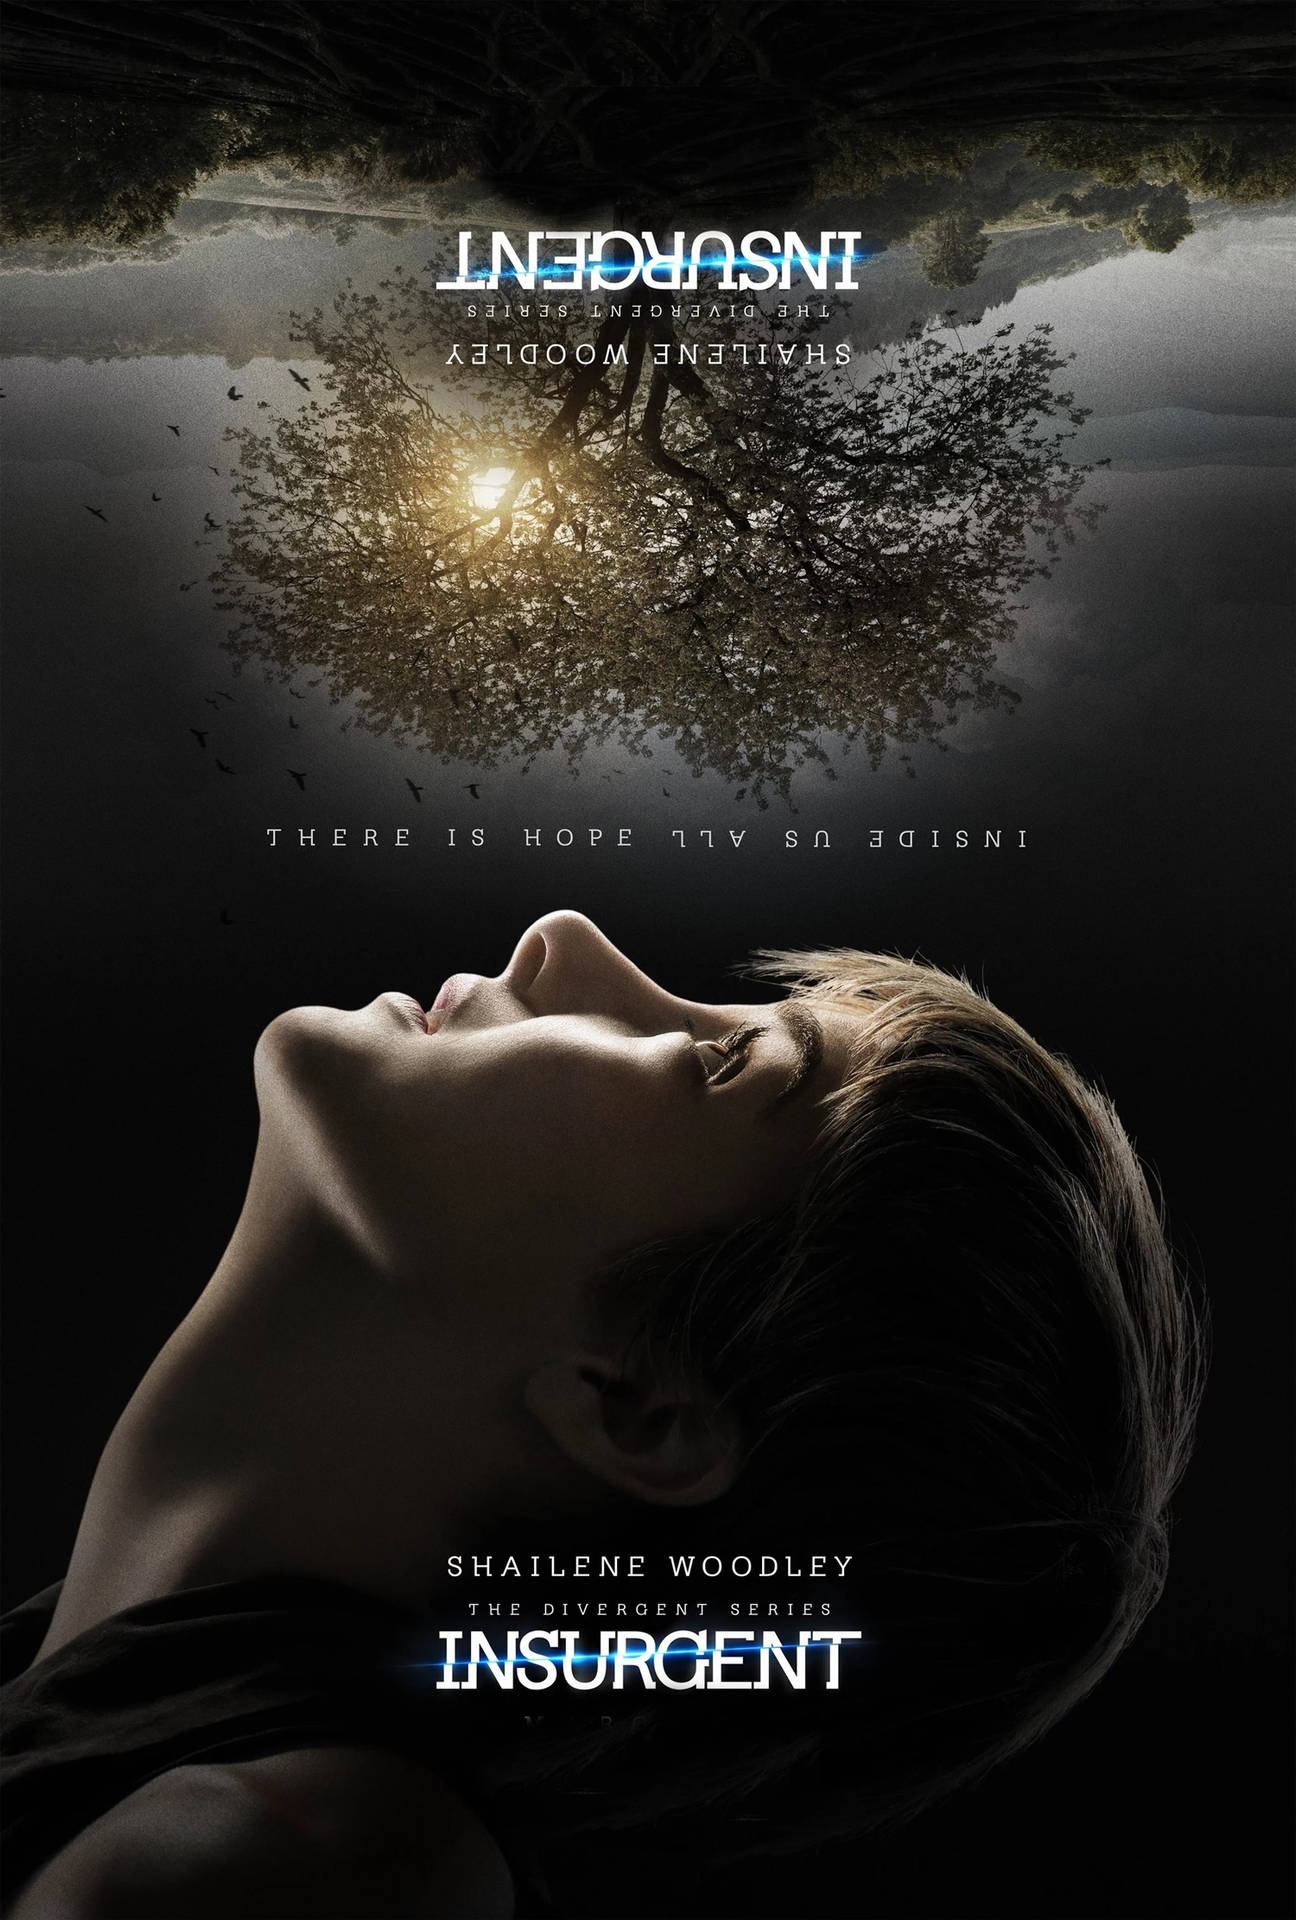 Diebestimmung-trilogie: Tris - Eine Welt Auf Dem Kopf Wallpaper